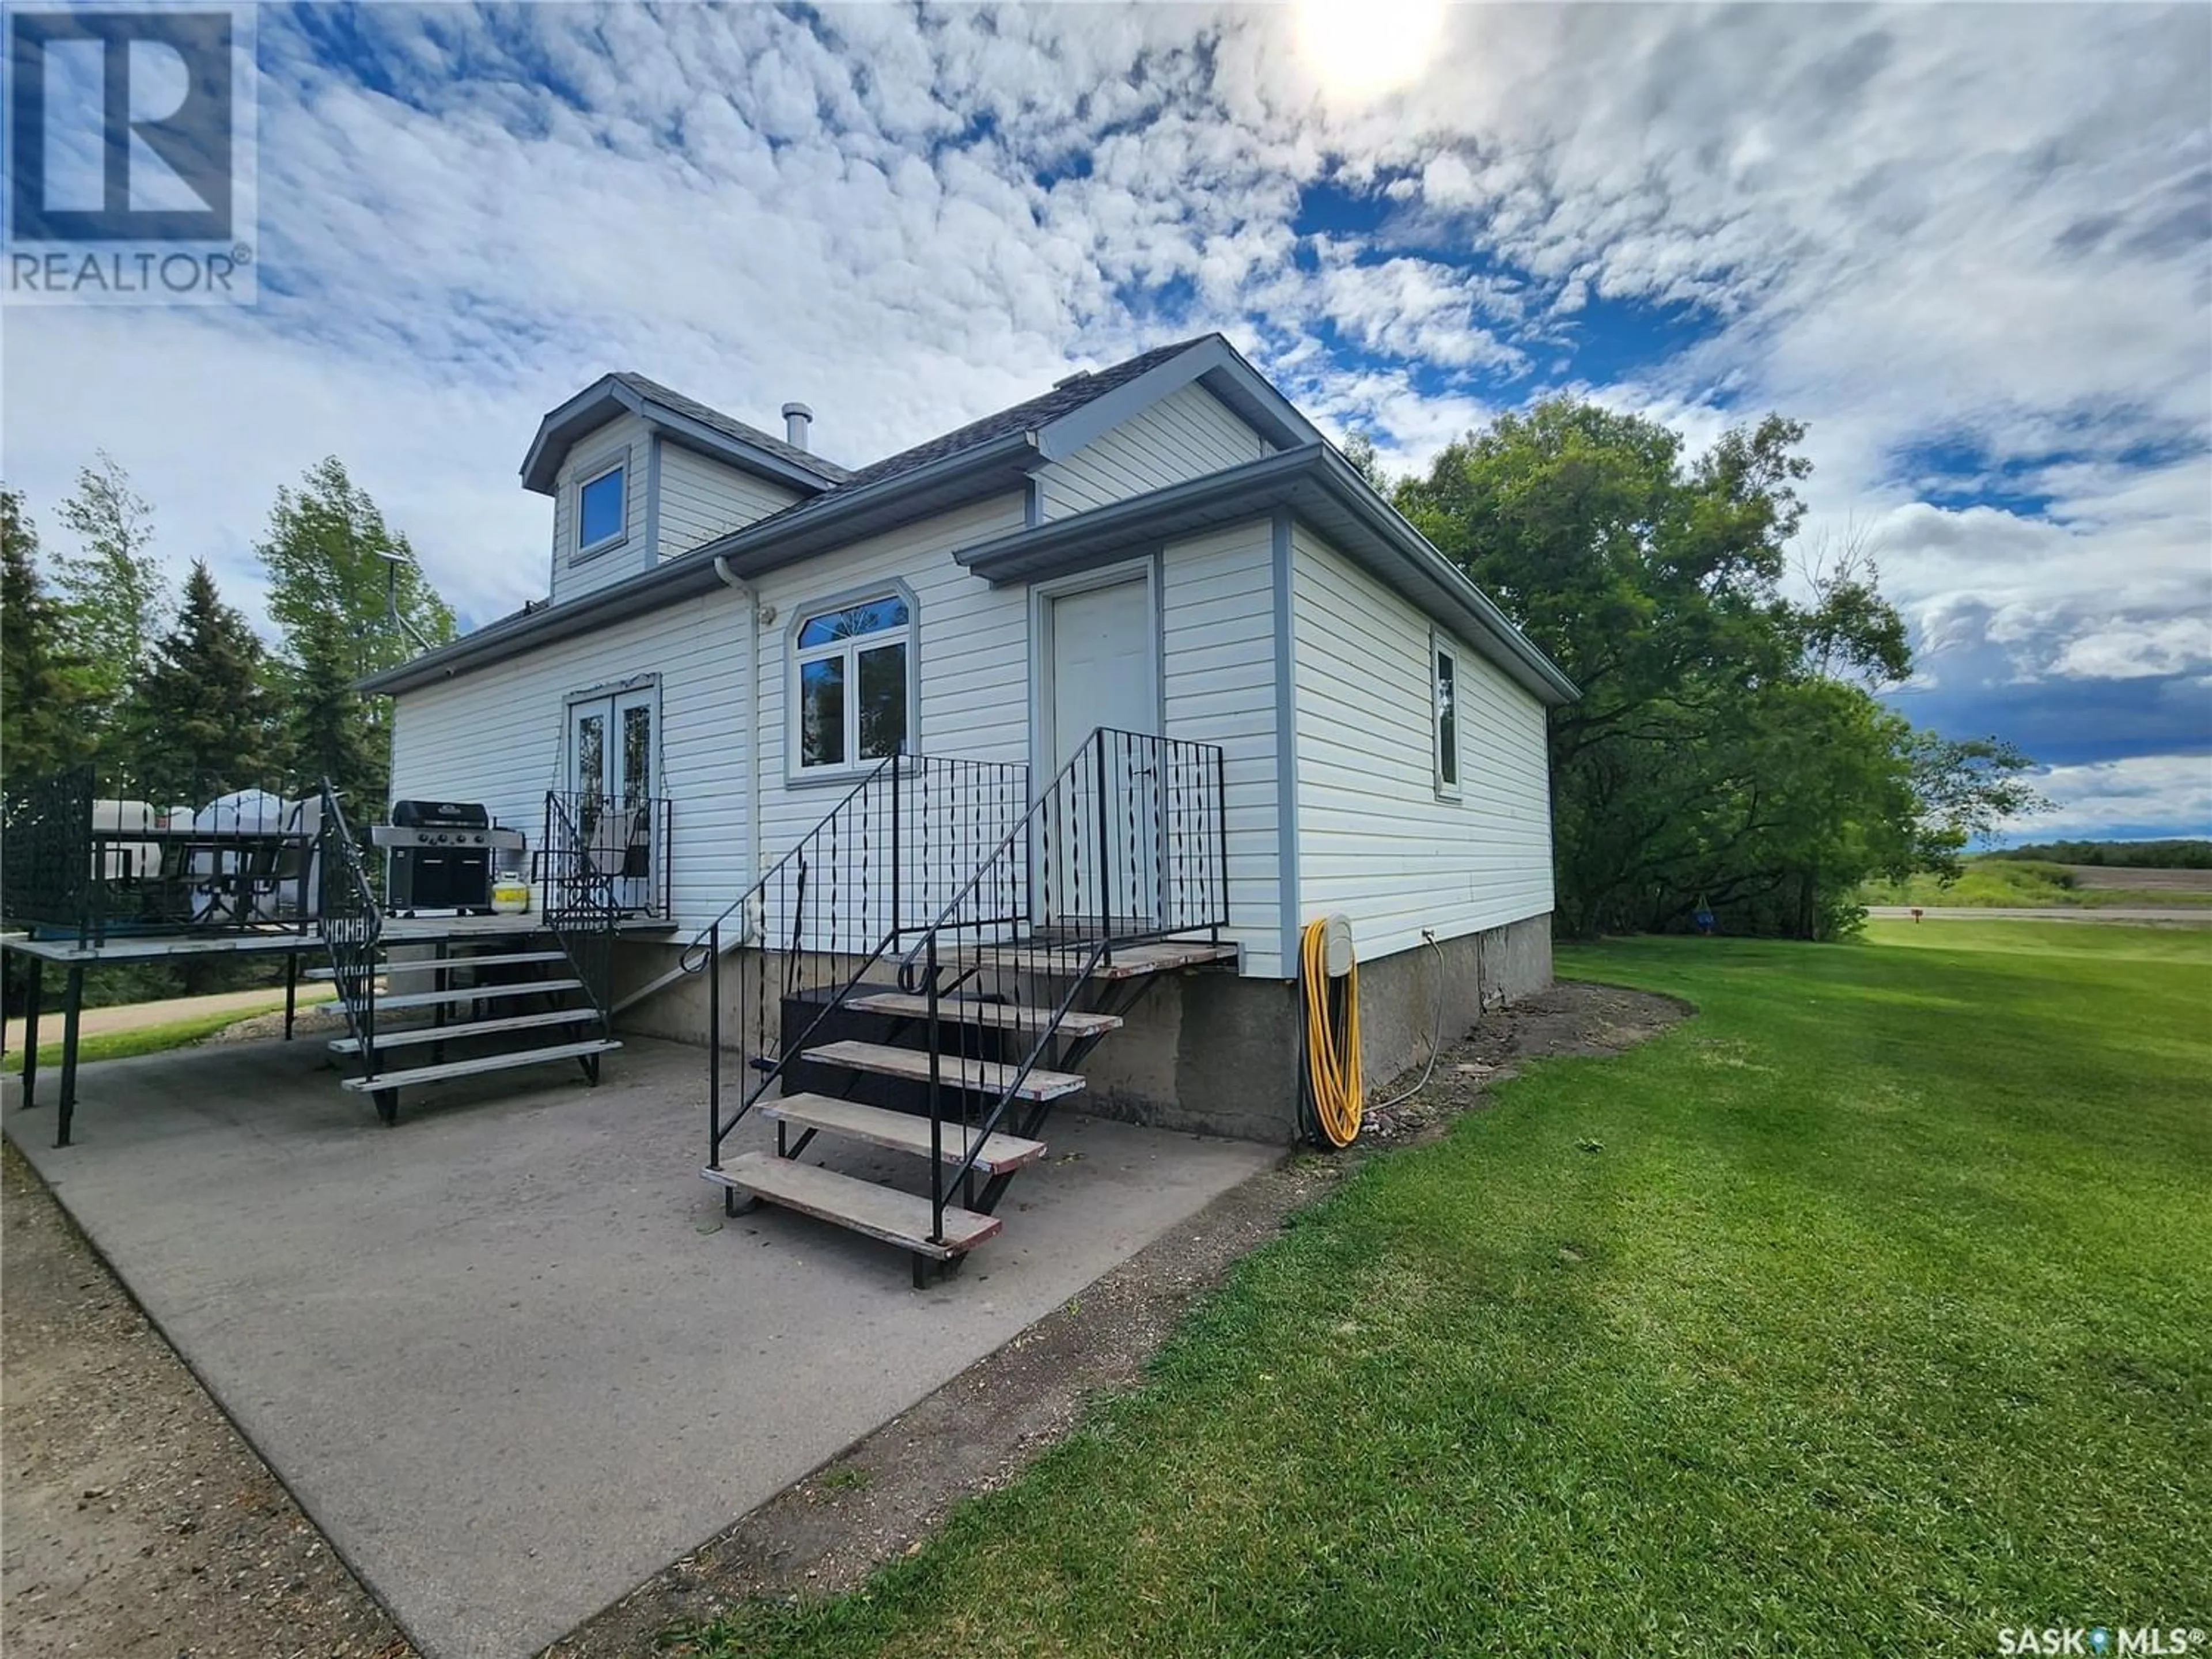 A pic from exterior of the house or condo for Gerhardt Acreage, Grayson Rm No. 184 Saskatchewan S0A1E0